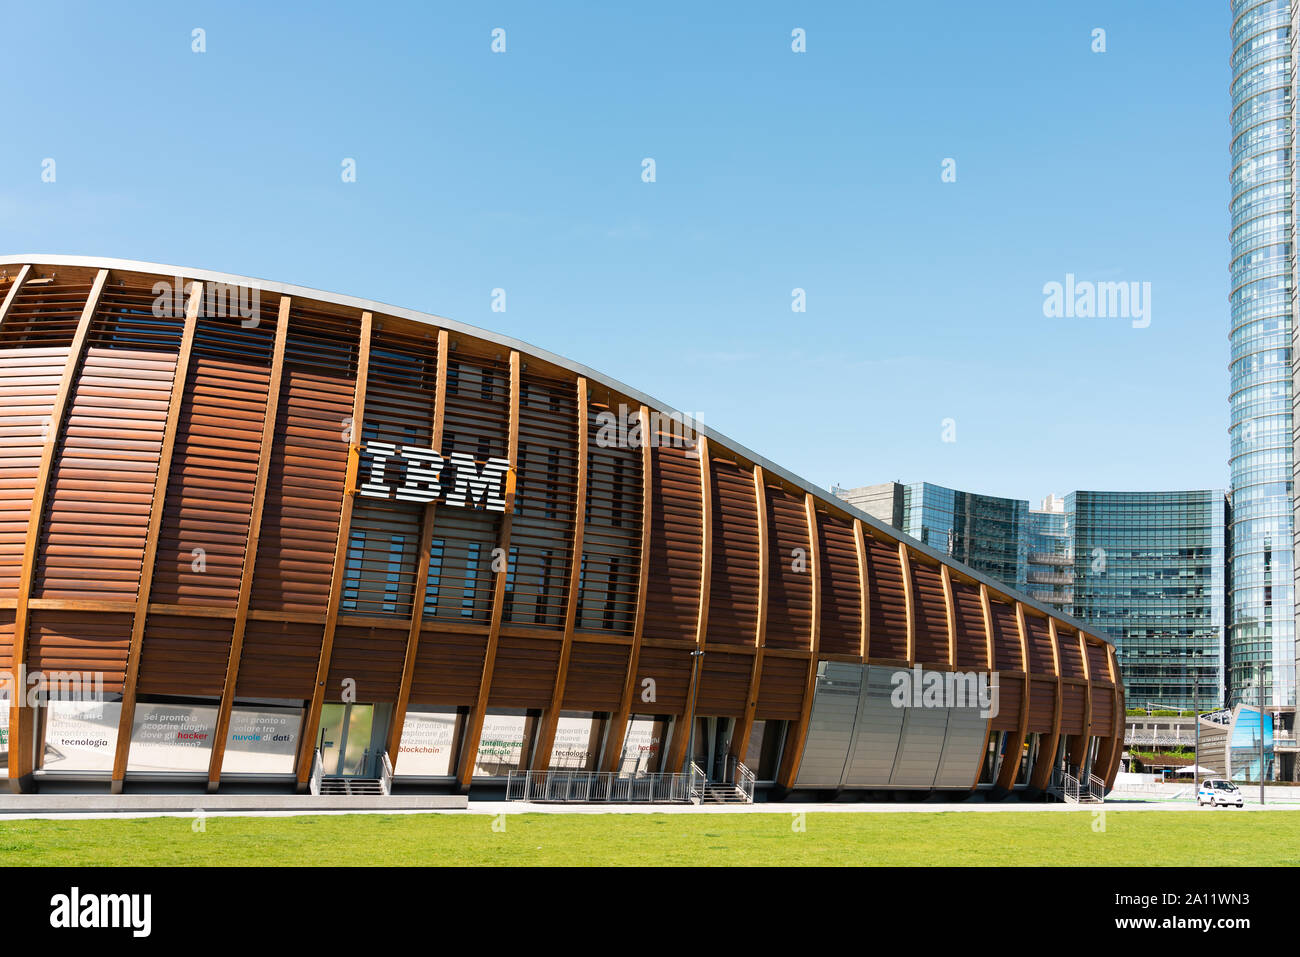 Mailand, Italien - 31. MAI 2019: IBM Gebäude in Porta Nuova oder neue Tür, dem wichtigsten Geschäftsviertel von Mailand Stockfoto